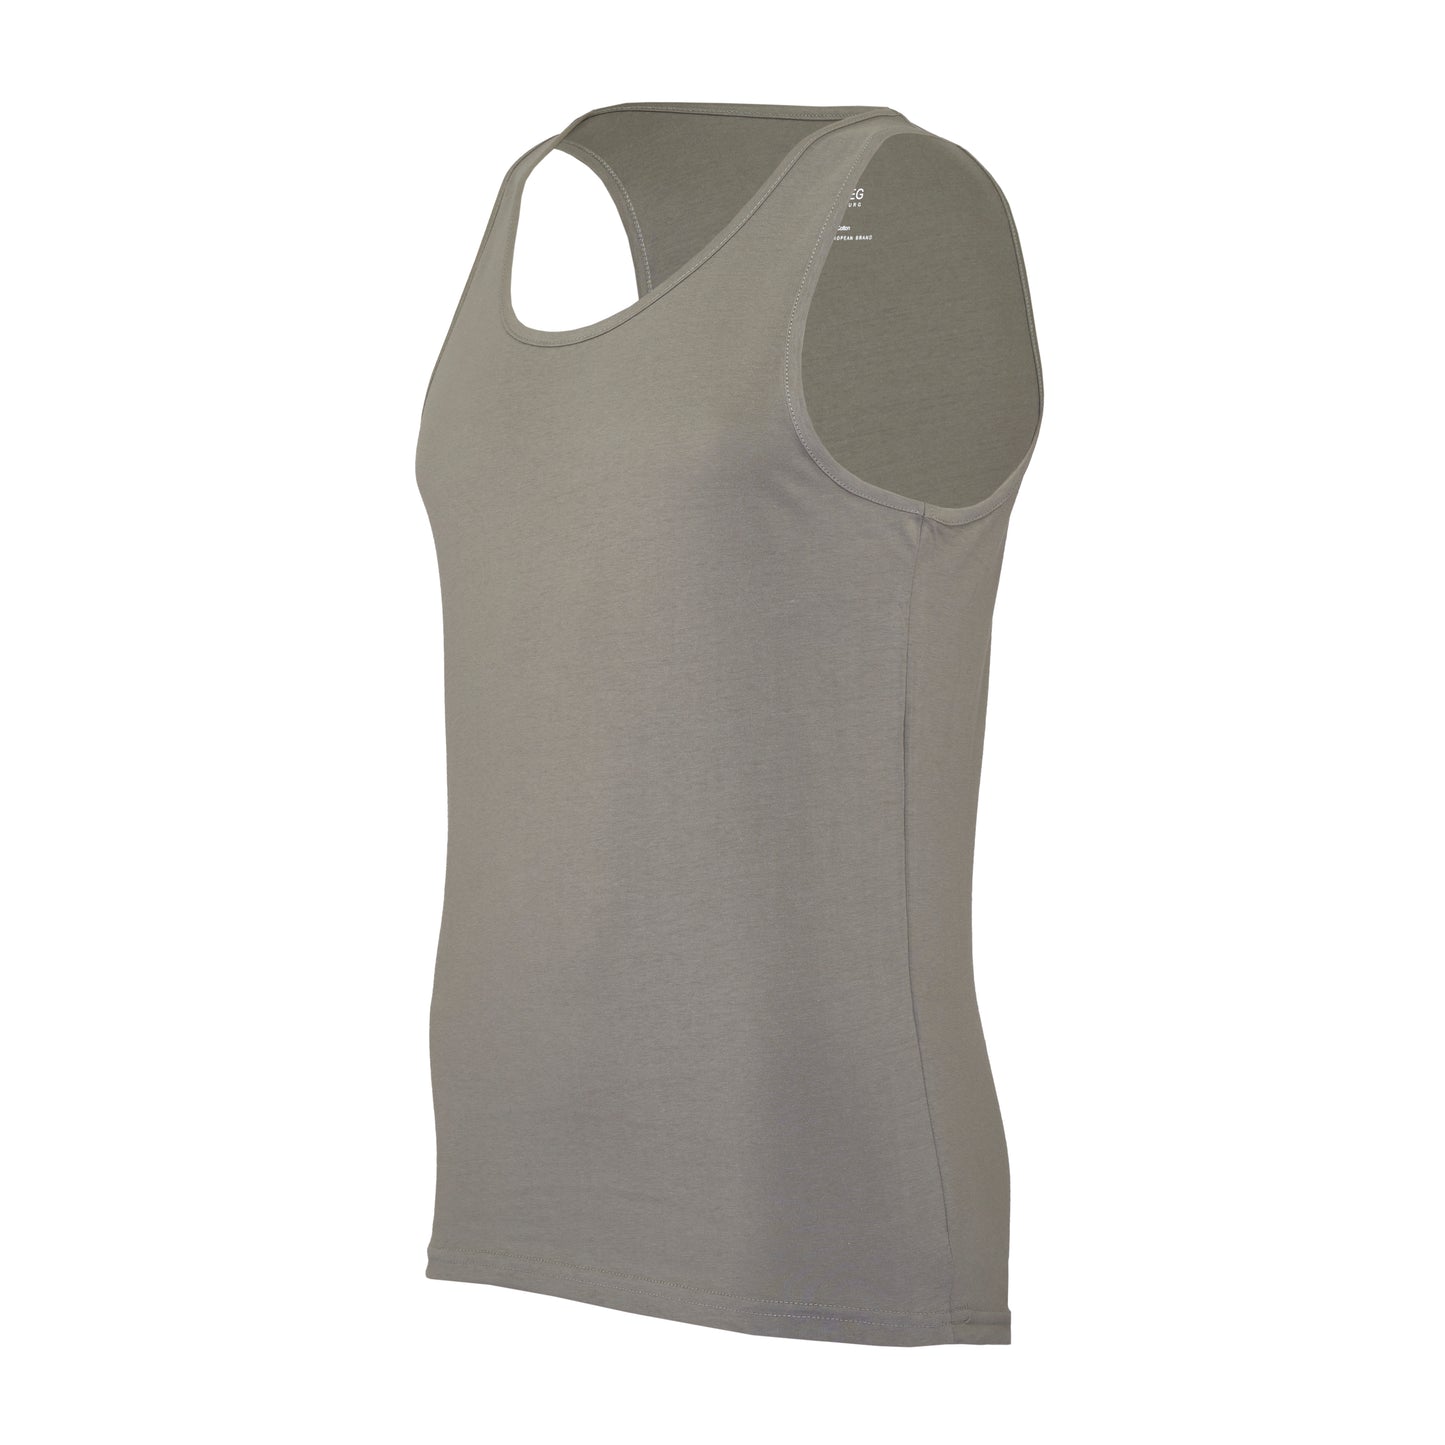 Ash grey, body fit premium tanktops – pack of 2 or 4